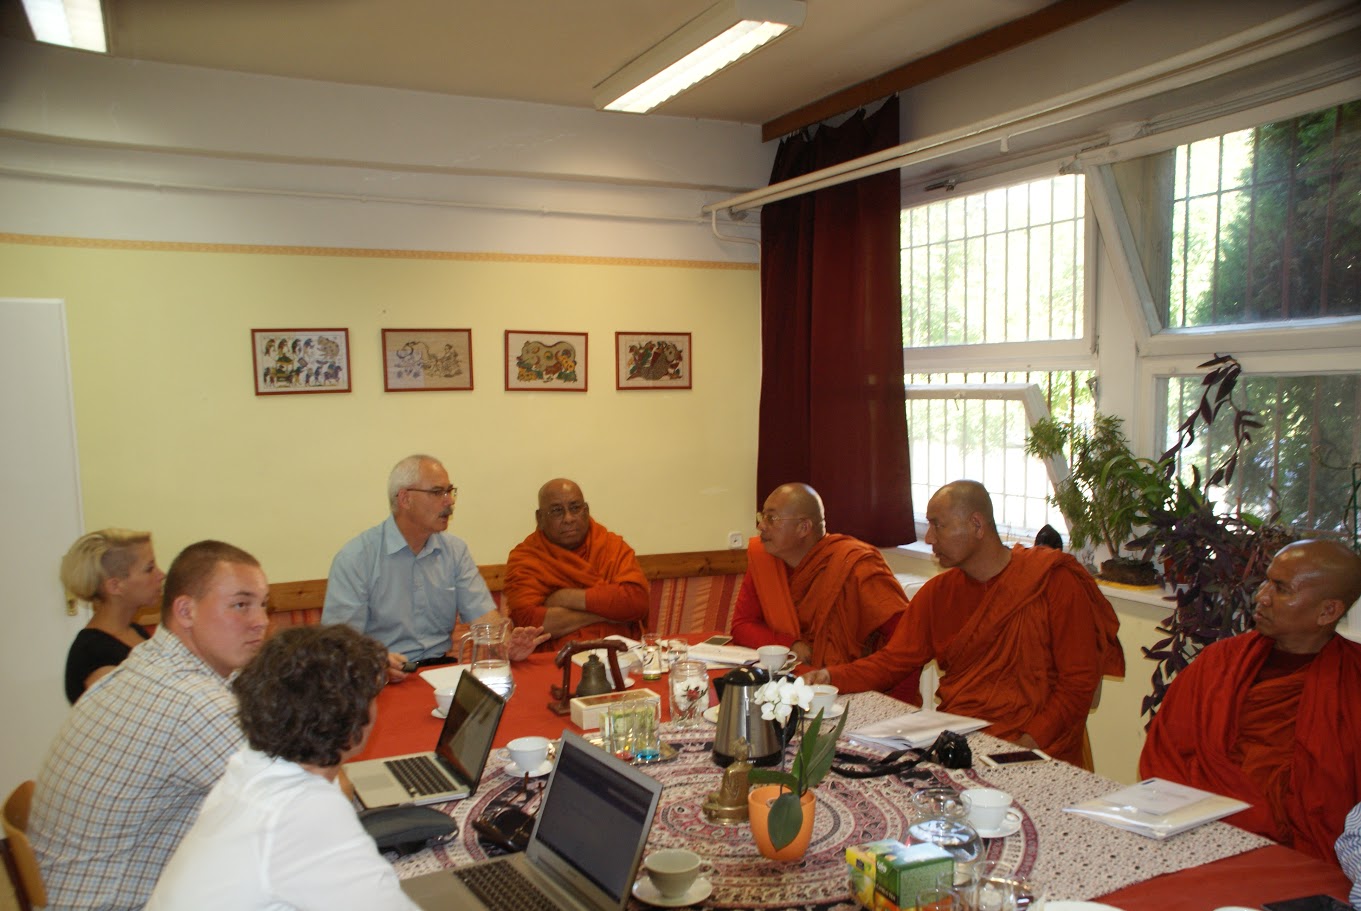 Együttműködési szándéknyilatkozatot írt alá a tiszteletreméltó Sitagu Sayadaw a burmai Sitagu International Buddhist Academy (Sitagu Nemzetközi Buddhista Akadémia: <a href="http://on.fb.me/1MozeYA">http://on.fb.me/1MozeYA</a>) részéről és Jelen János, a Főiskola rektora.